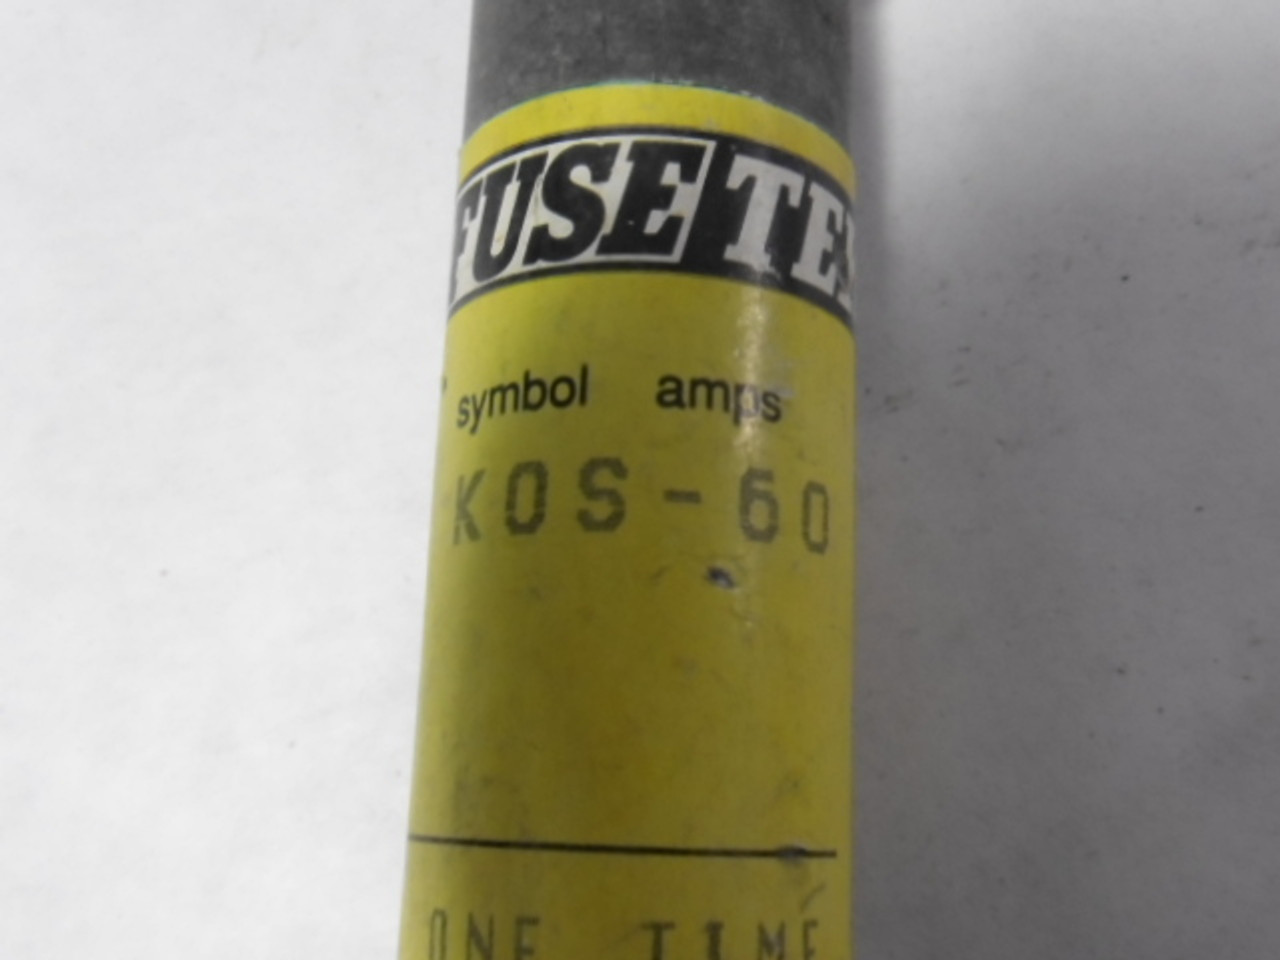 Fusetek KOS-60 One Time Fuse 60A 600V USED